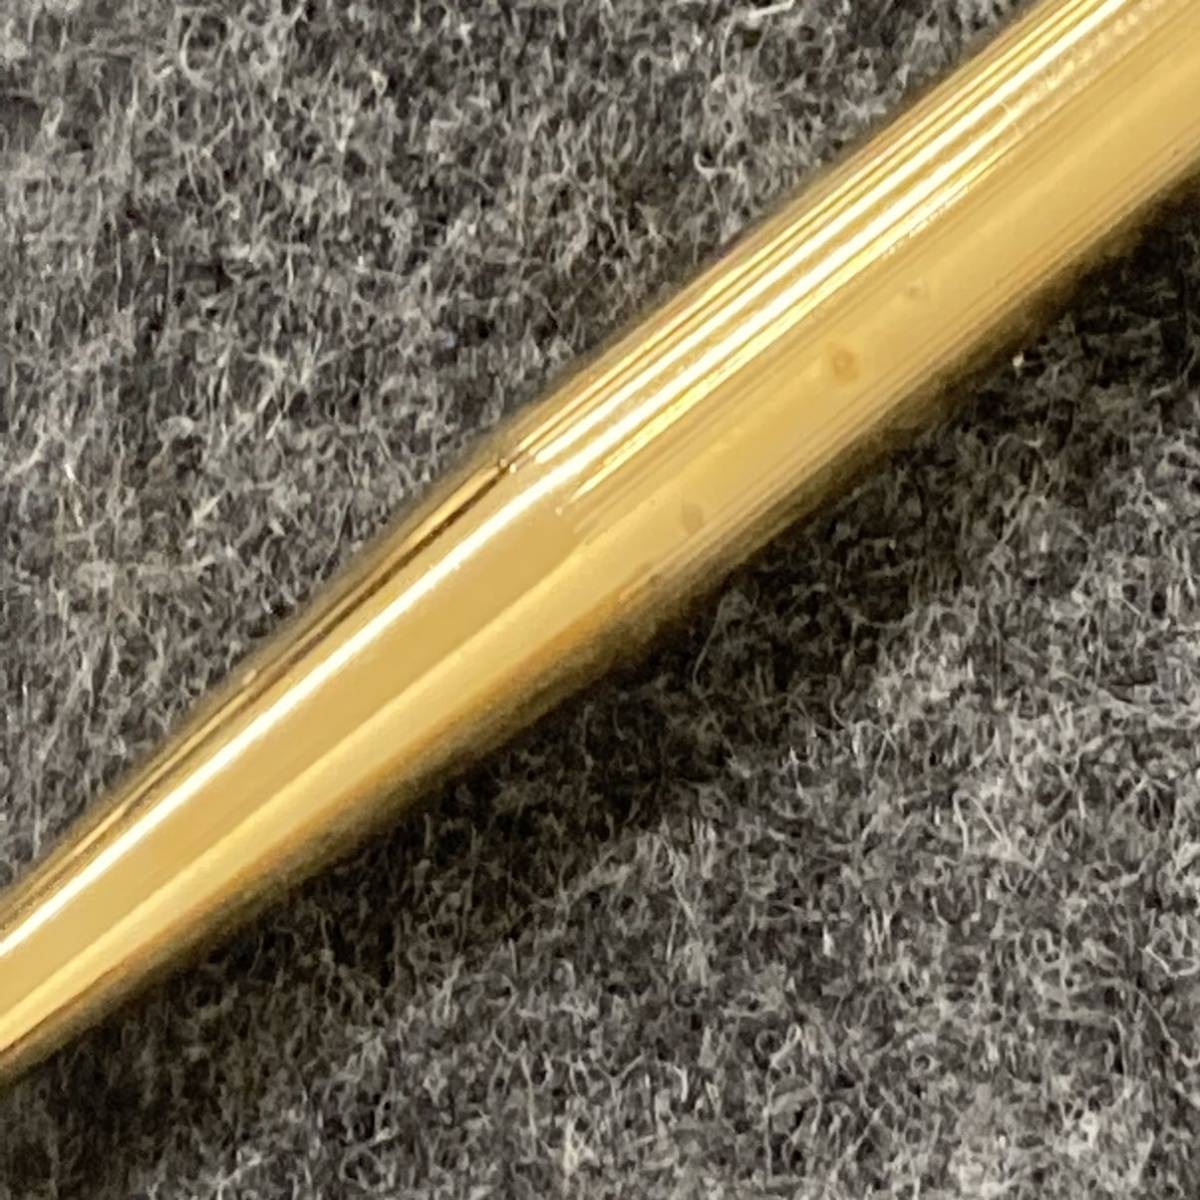 203□SHEAFFER シェーファー ボールペン GOLD ELECTRO PLATED ゴールドカラー ペン 筆記具_画像5